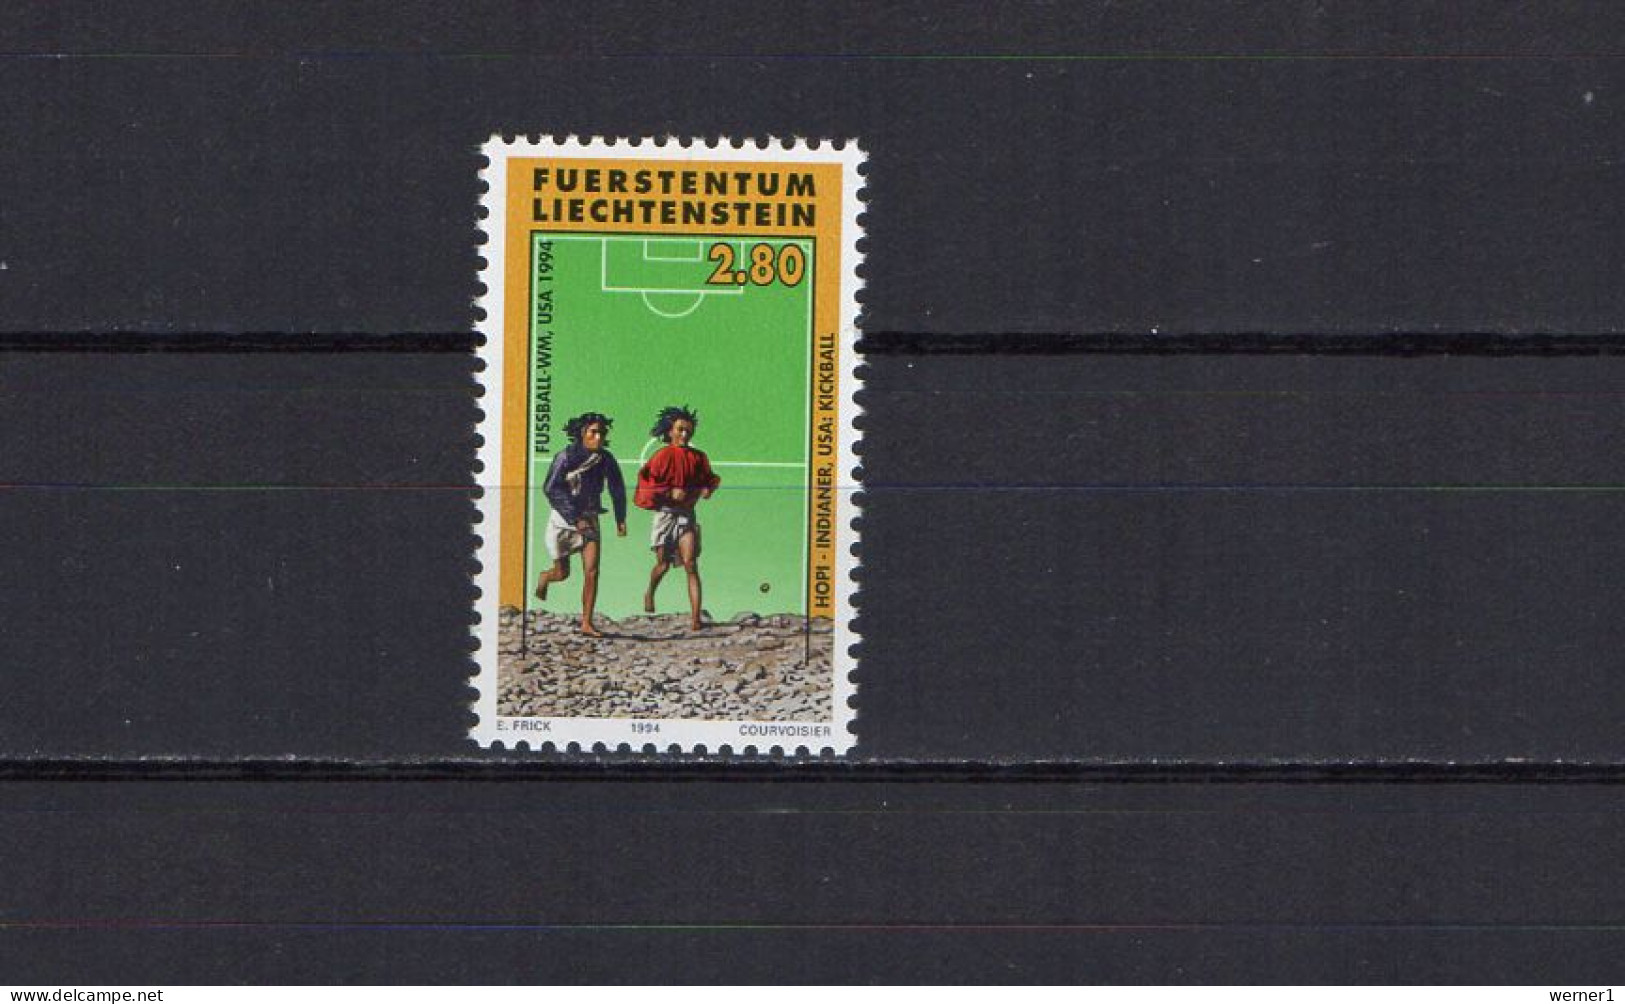 Liechtenstein 1994 Football Soccer World Cup Stamp MNH - 1994 – USA